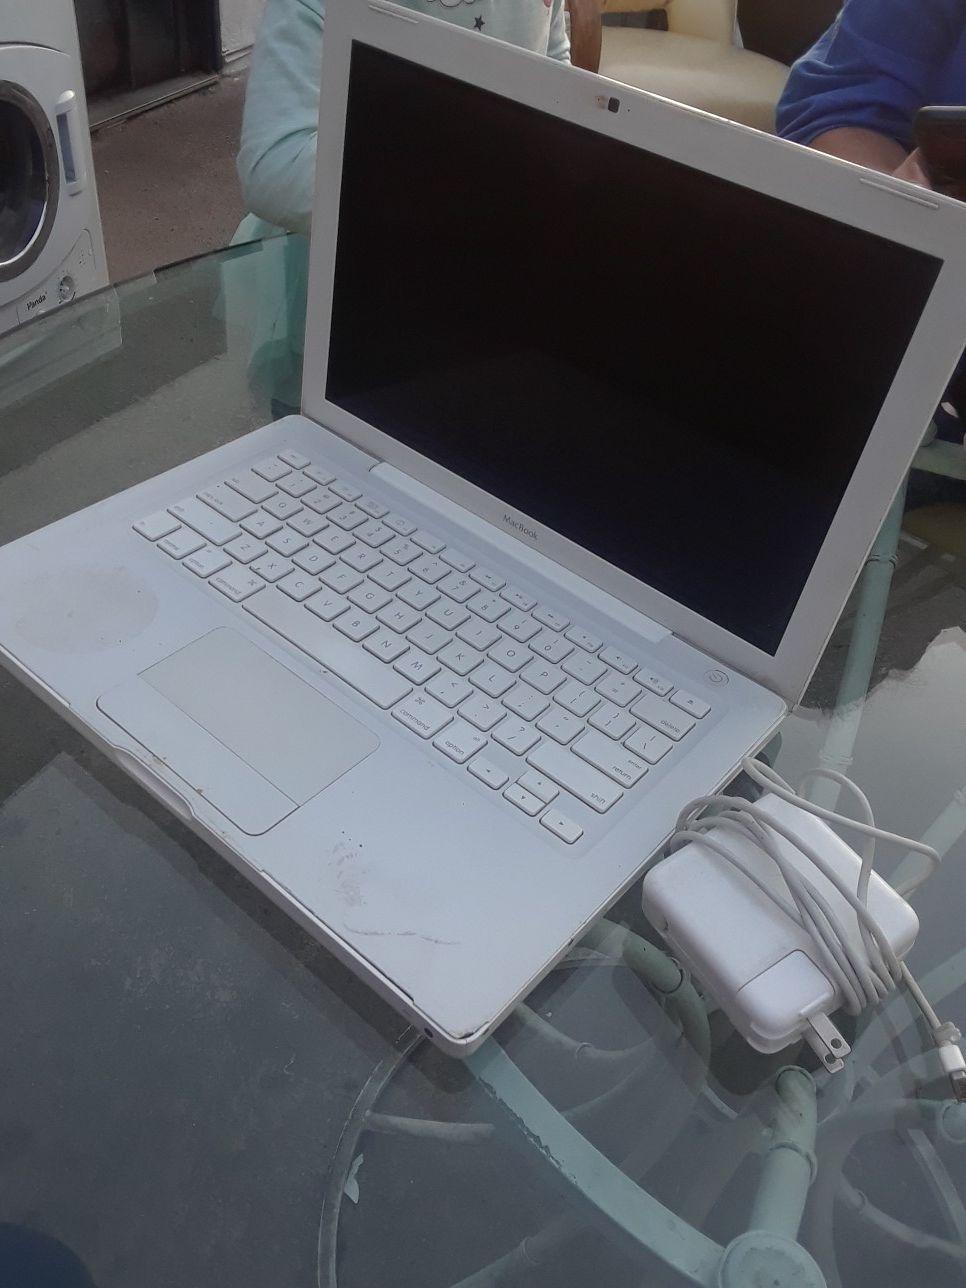 Used Apple laptop LOCKED !!